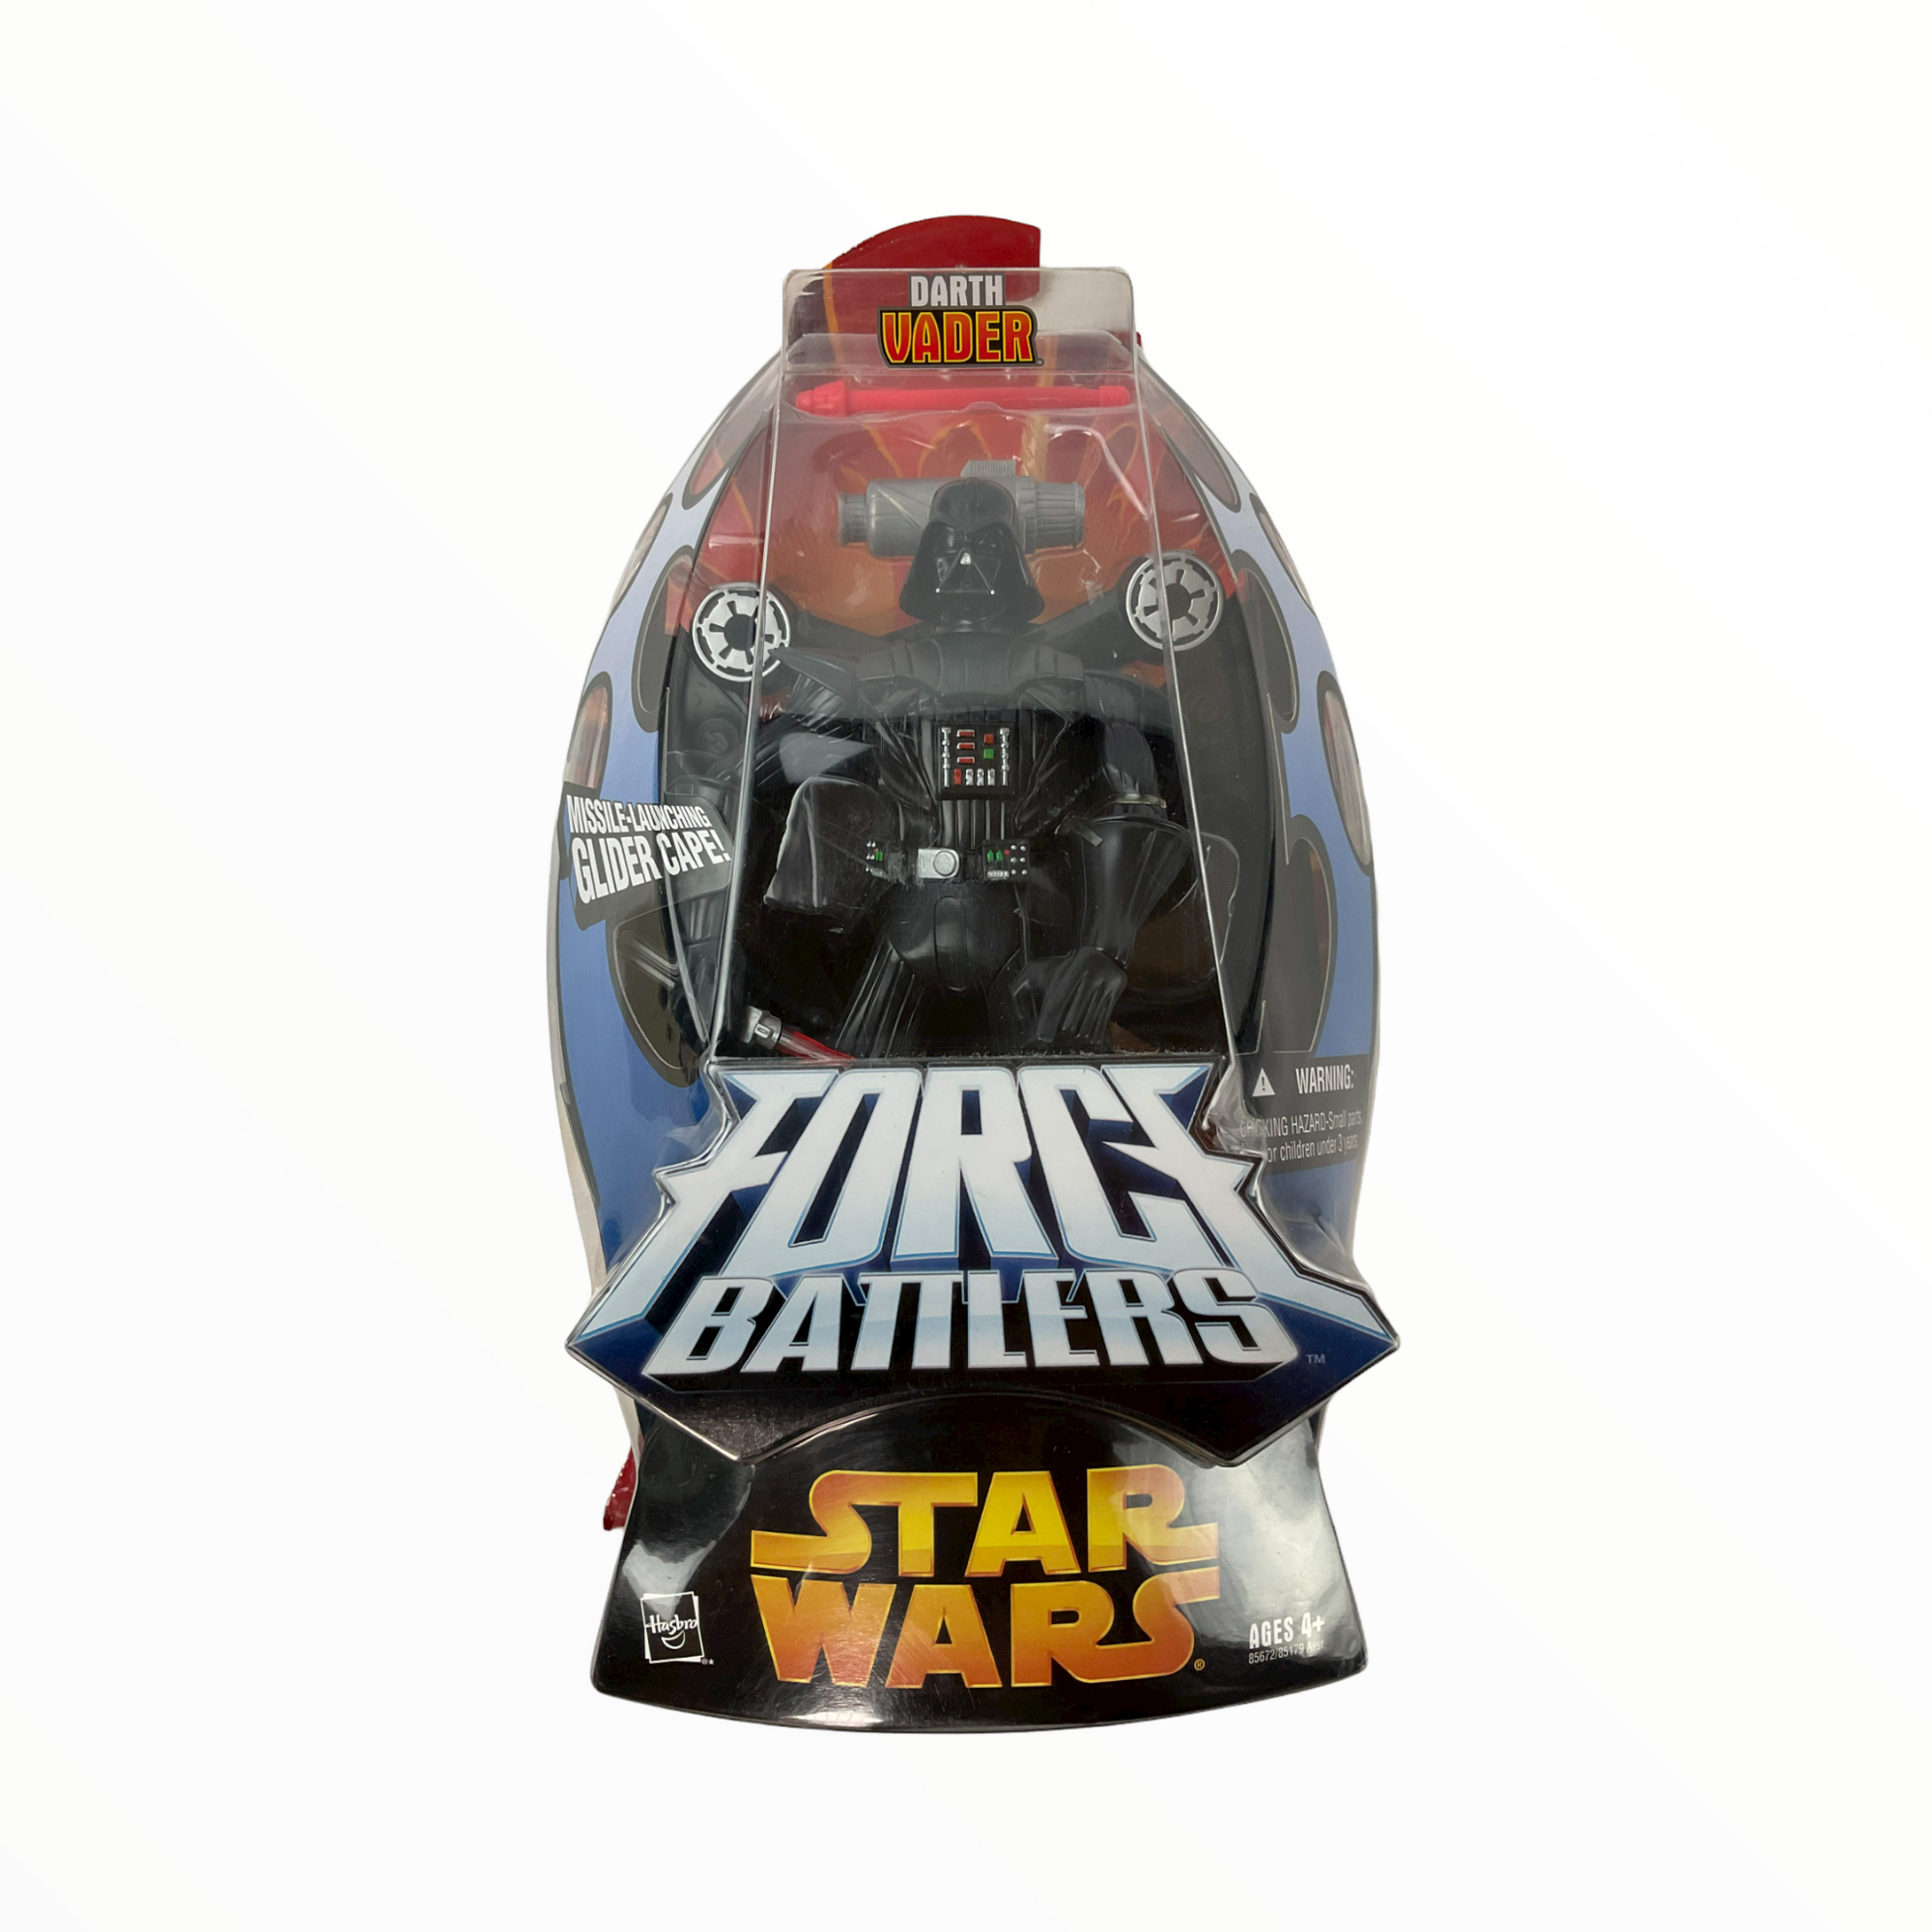 Star Wars FORCE BATTLERS DARTH VADER V2